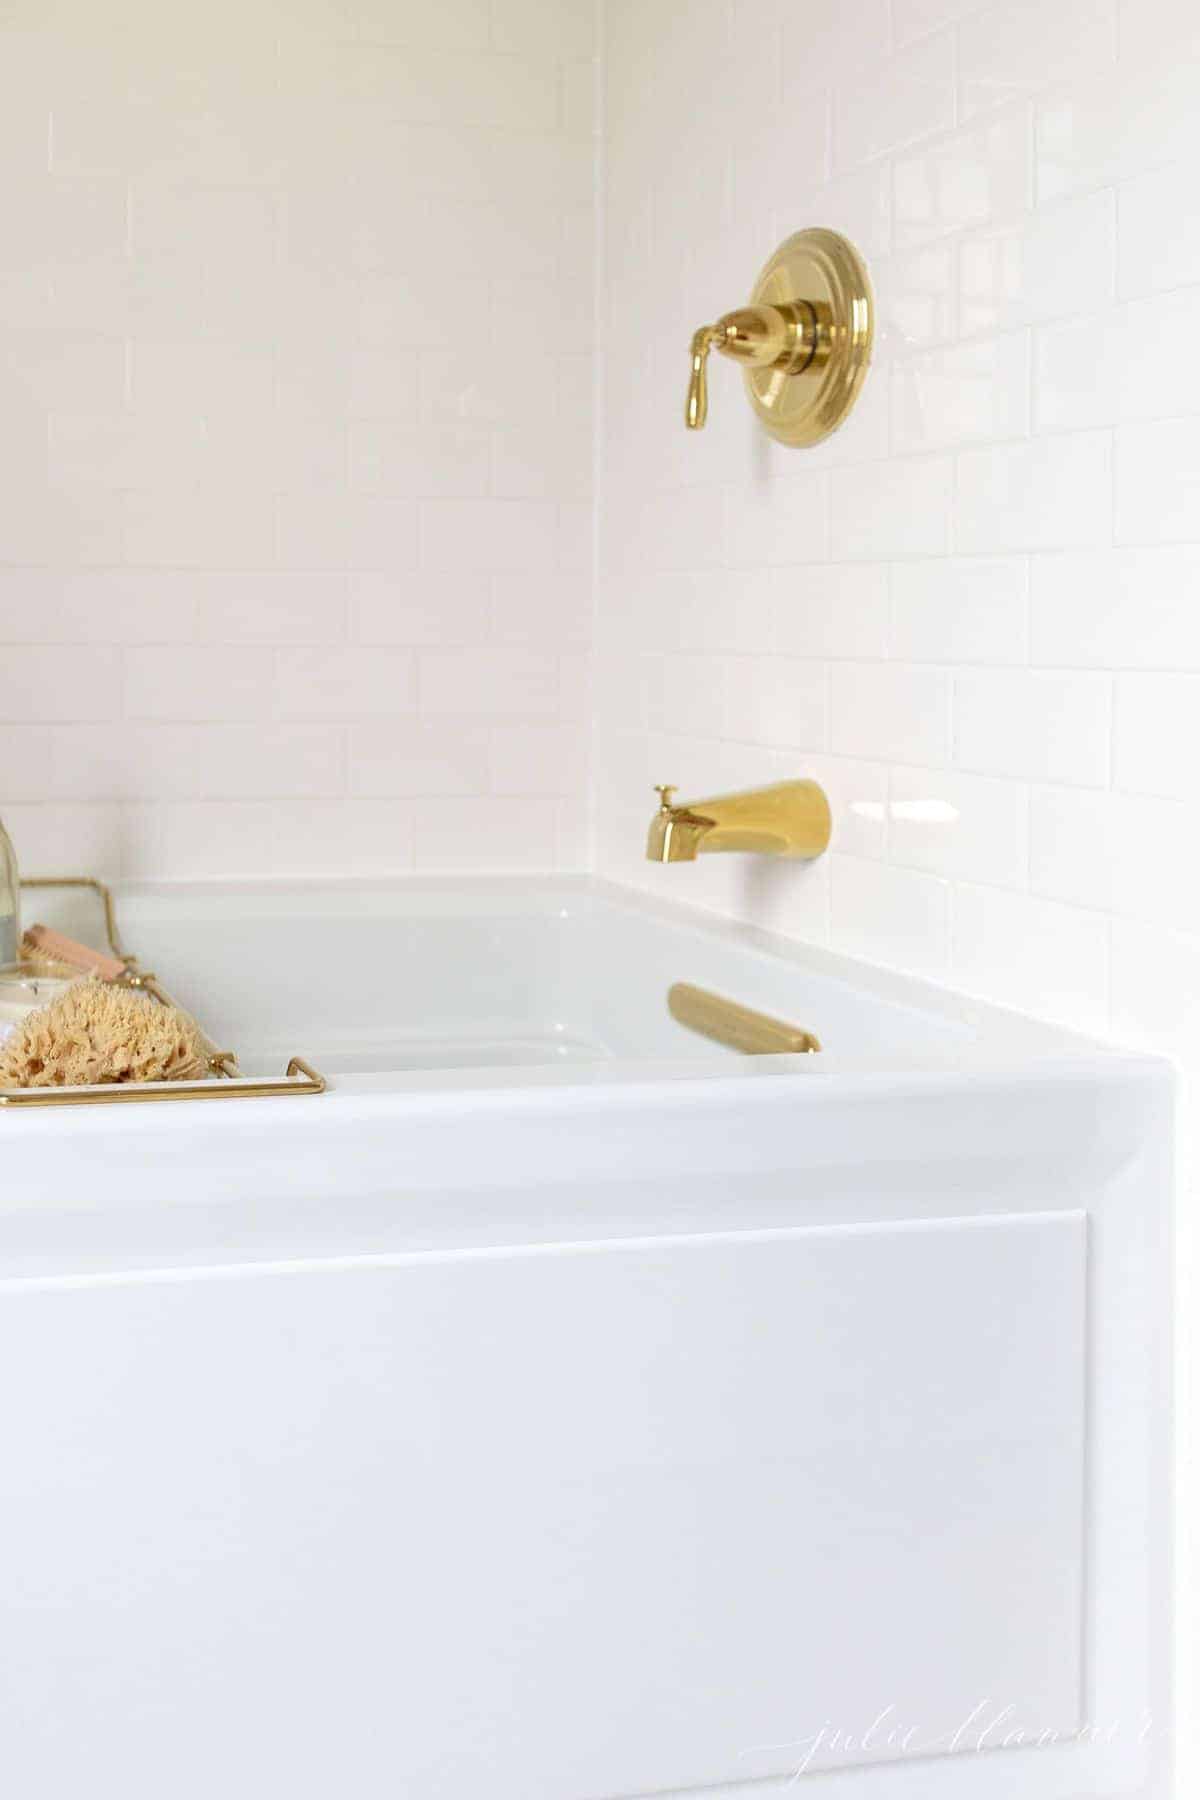 一个黄铜浴盘，里面有蜡烛、香槟、海绵和毛巾等各种物品，让你拥有终极的沐浴体验。